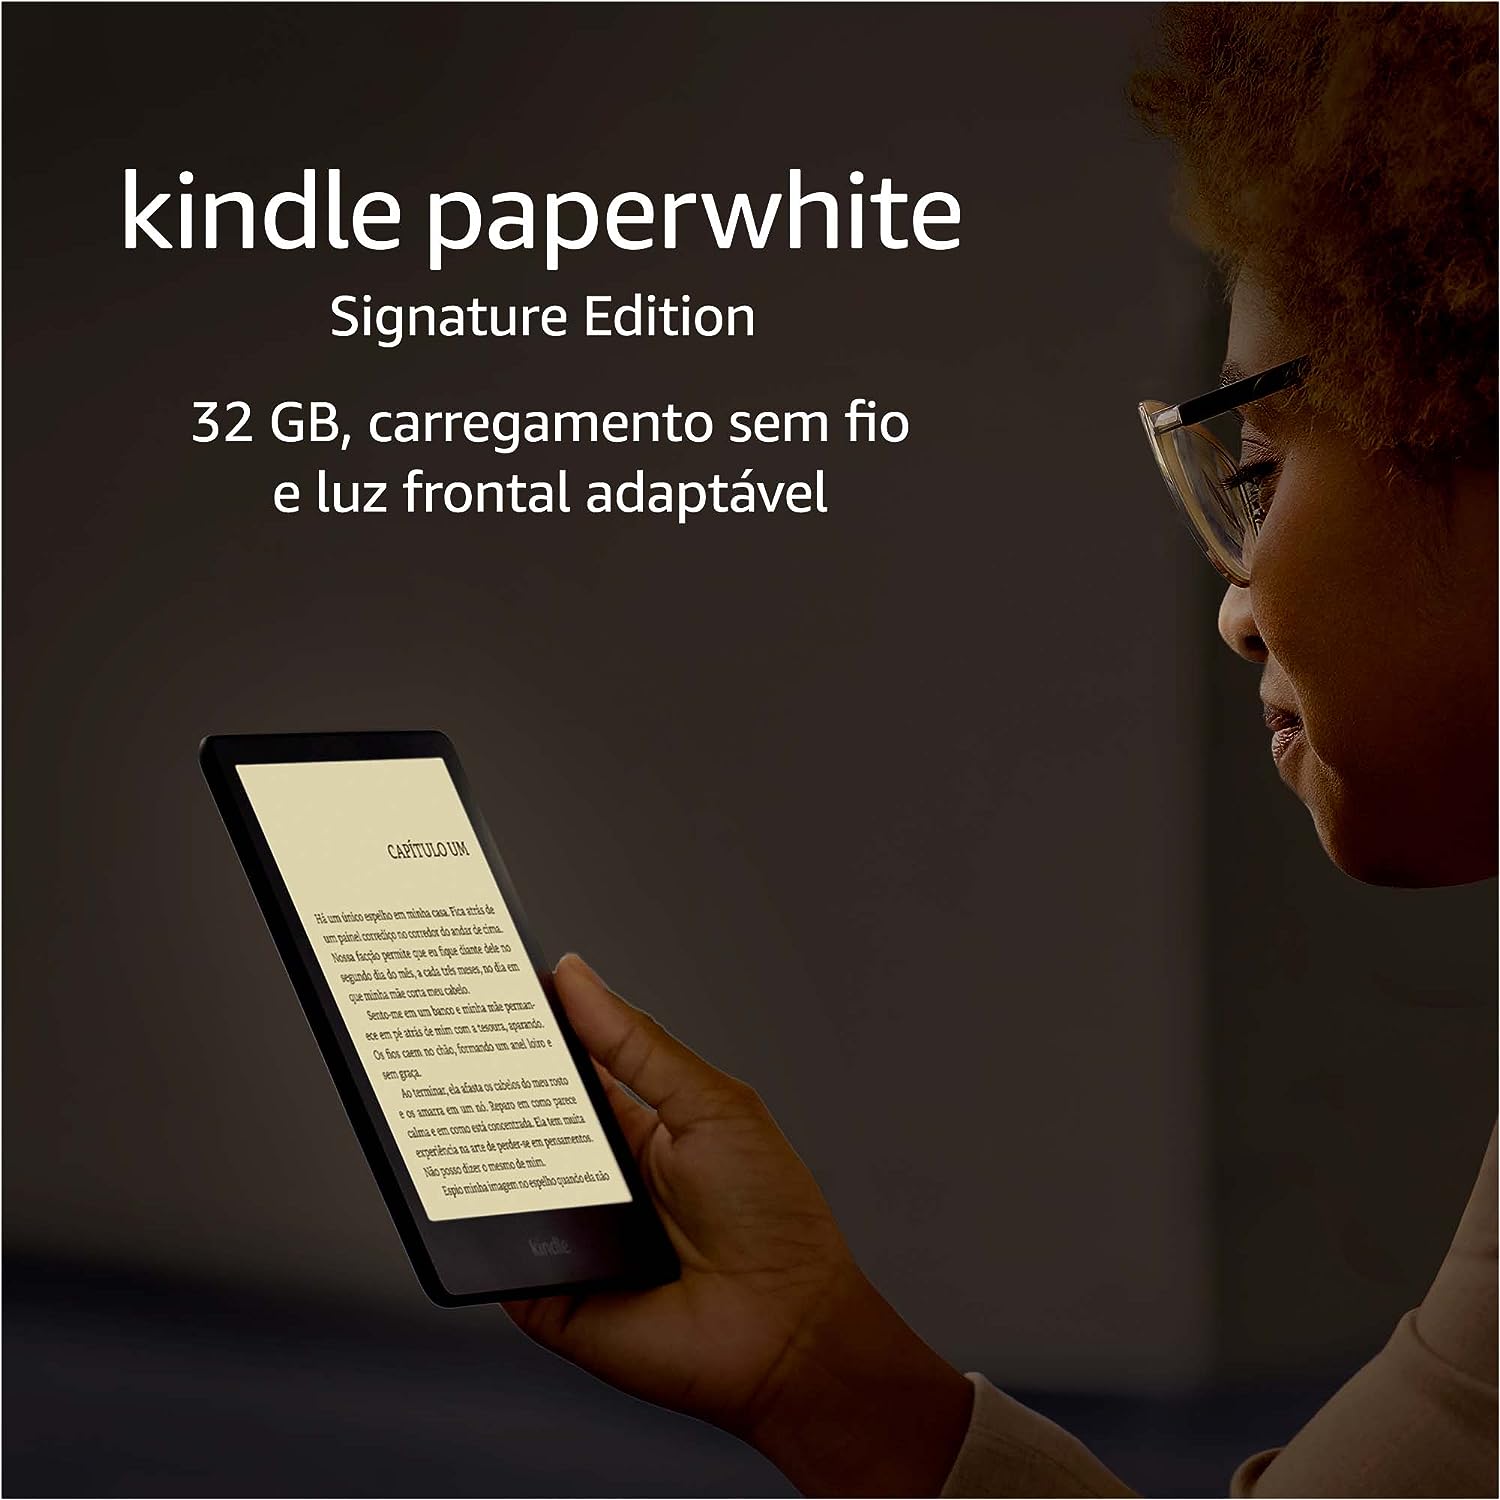 Kindle Paperwhite Signature Edition: 32 GB, à prova d’água, carregamento sem fio e luz frontal adaptável